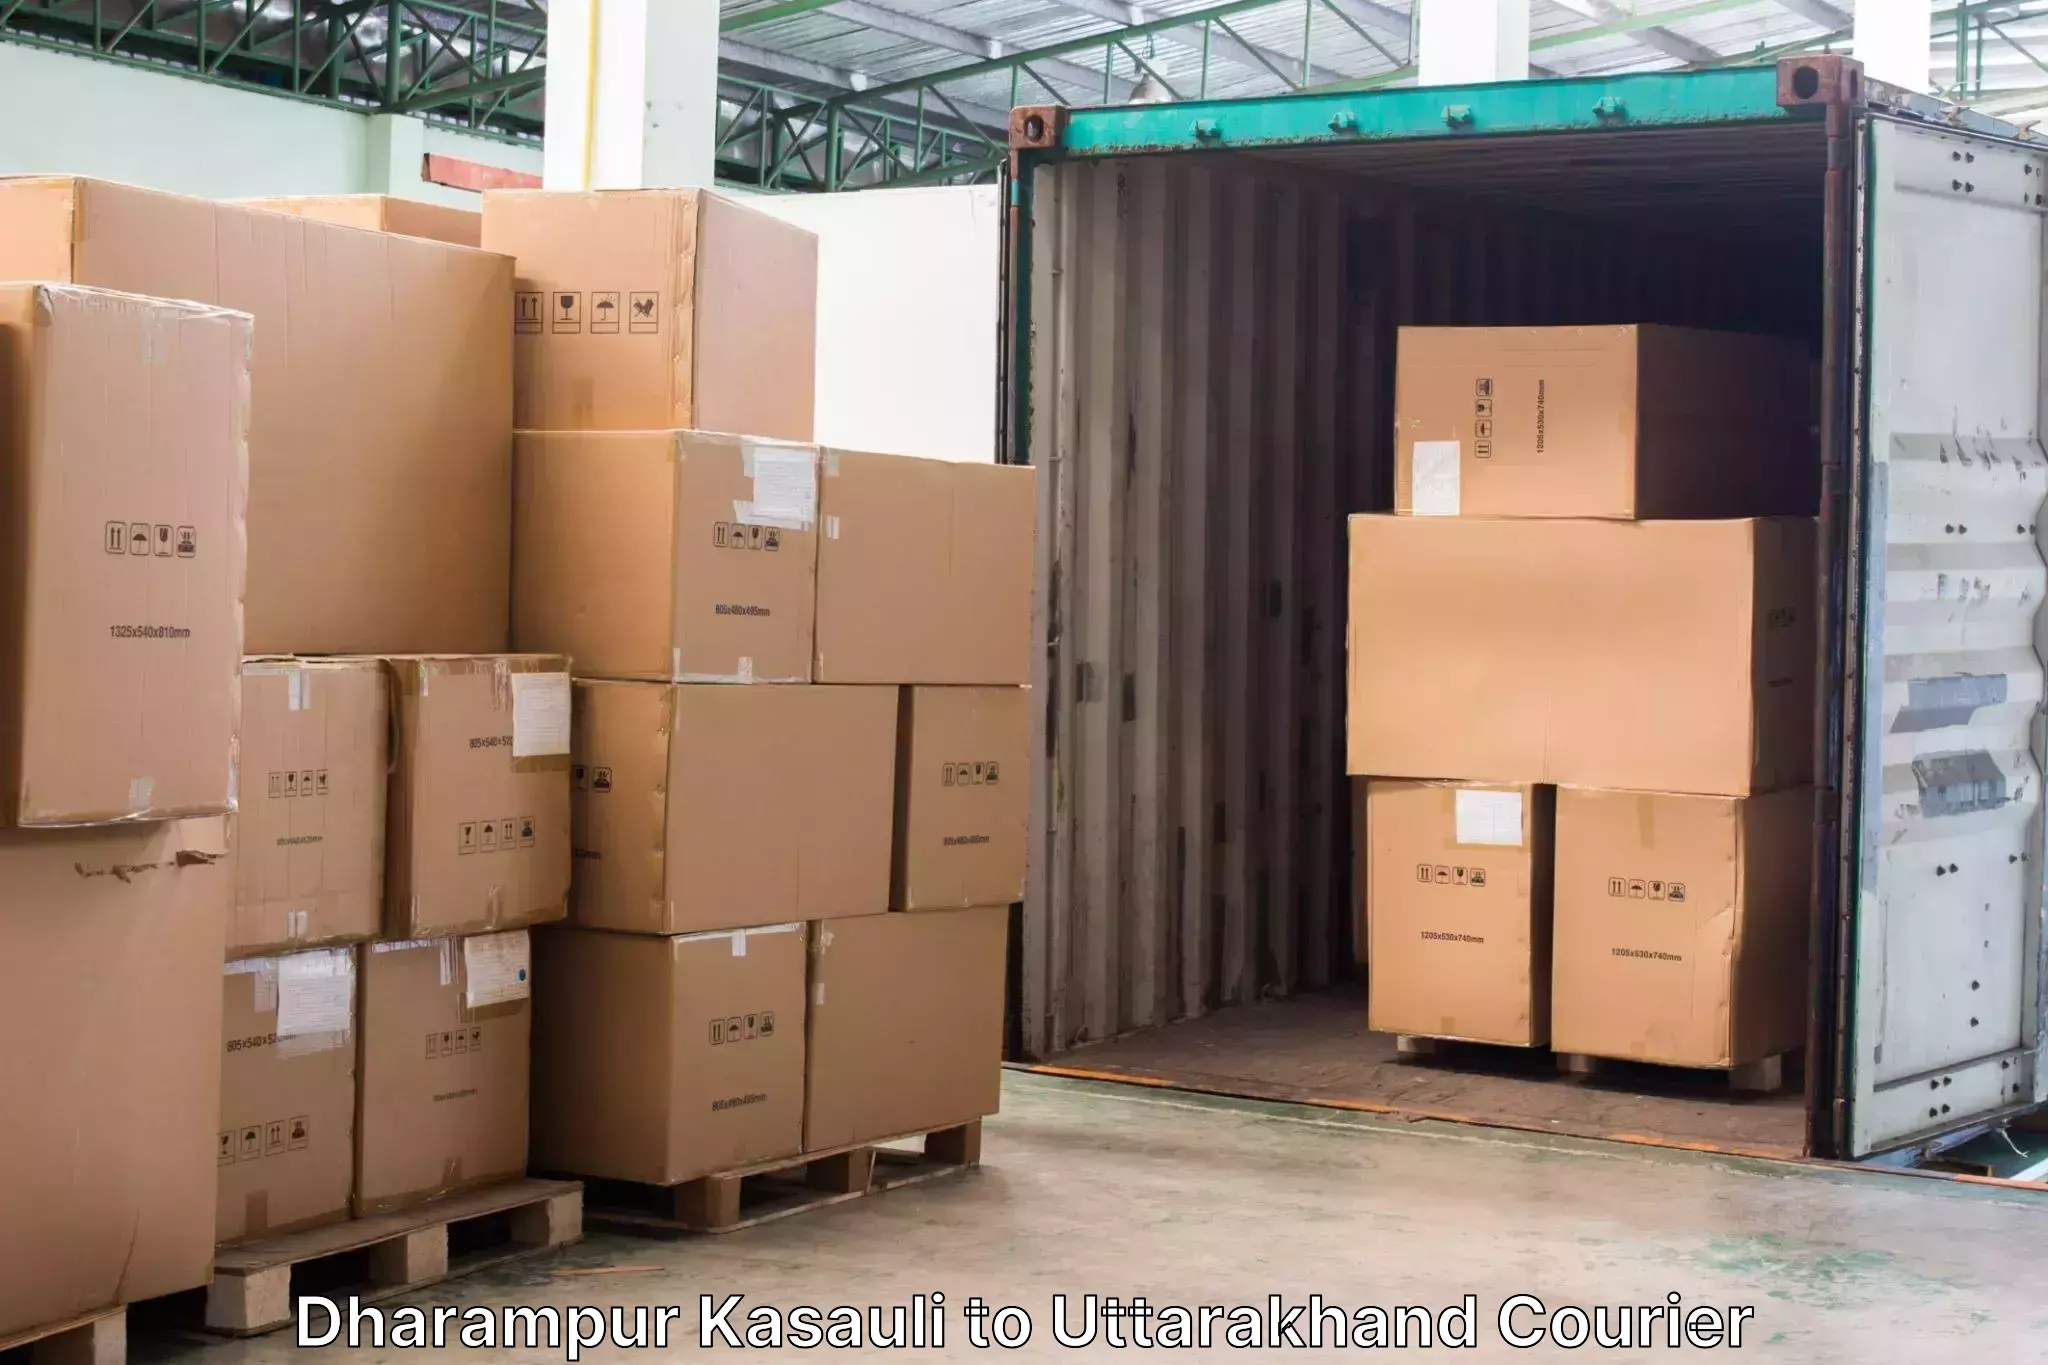 Luggage transport company Dharampur Kasauli to Uttarakhand